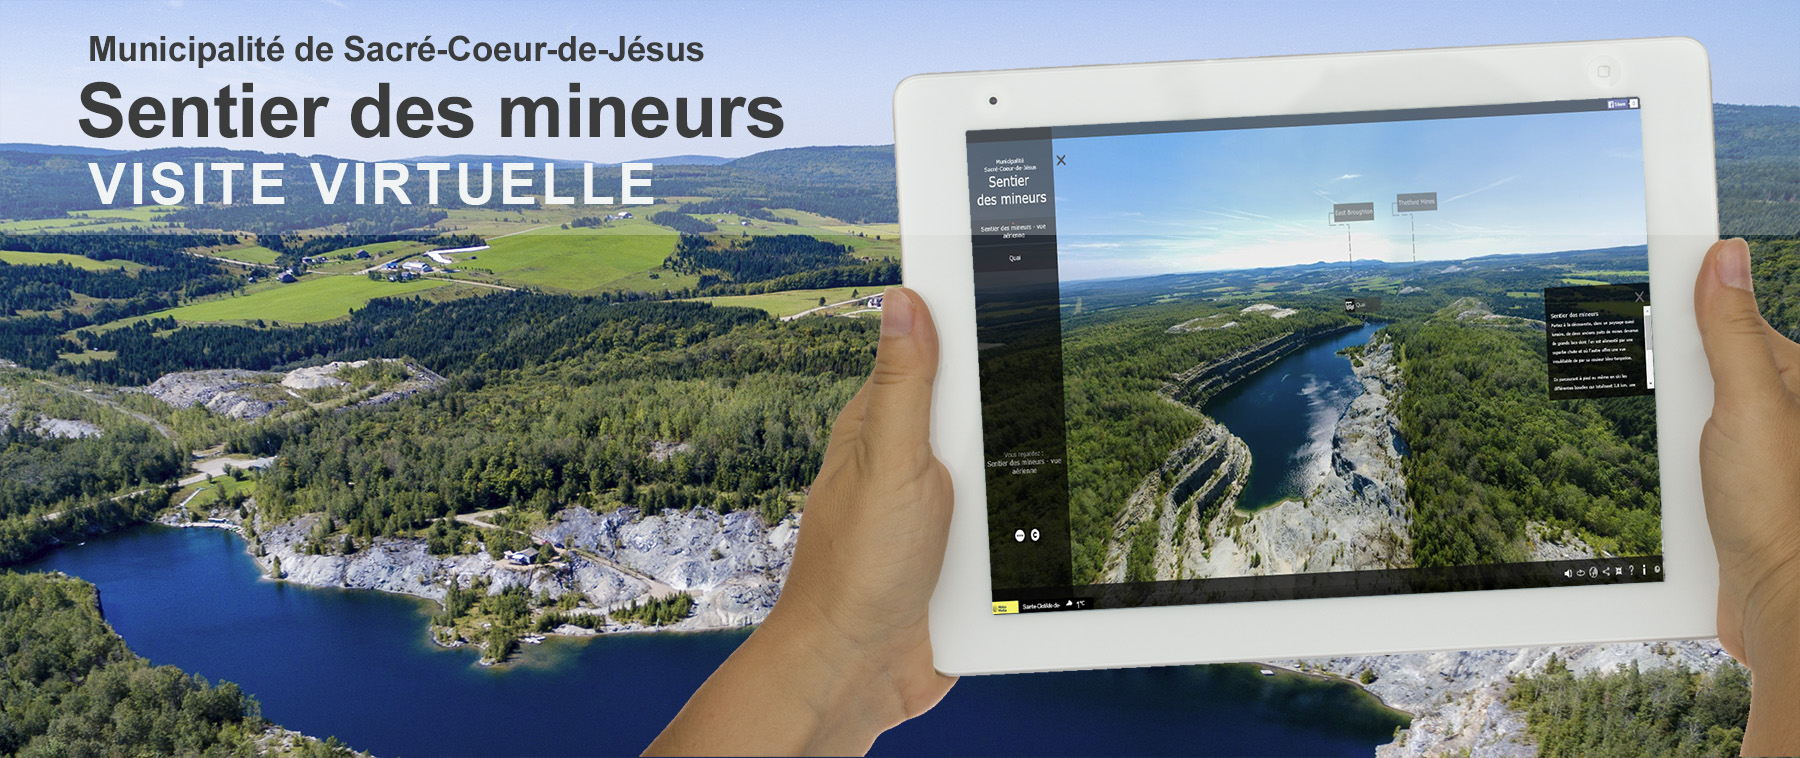 Visite virtuelle 360 degrés Sacré-Coeur-de-Jésus